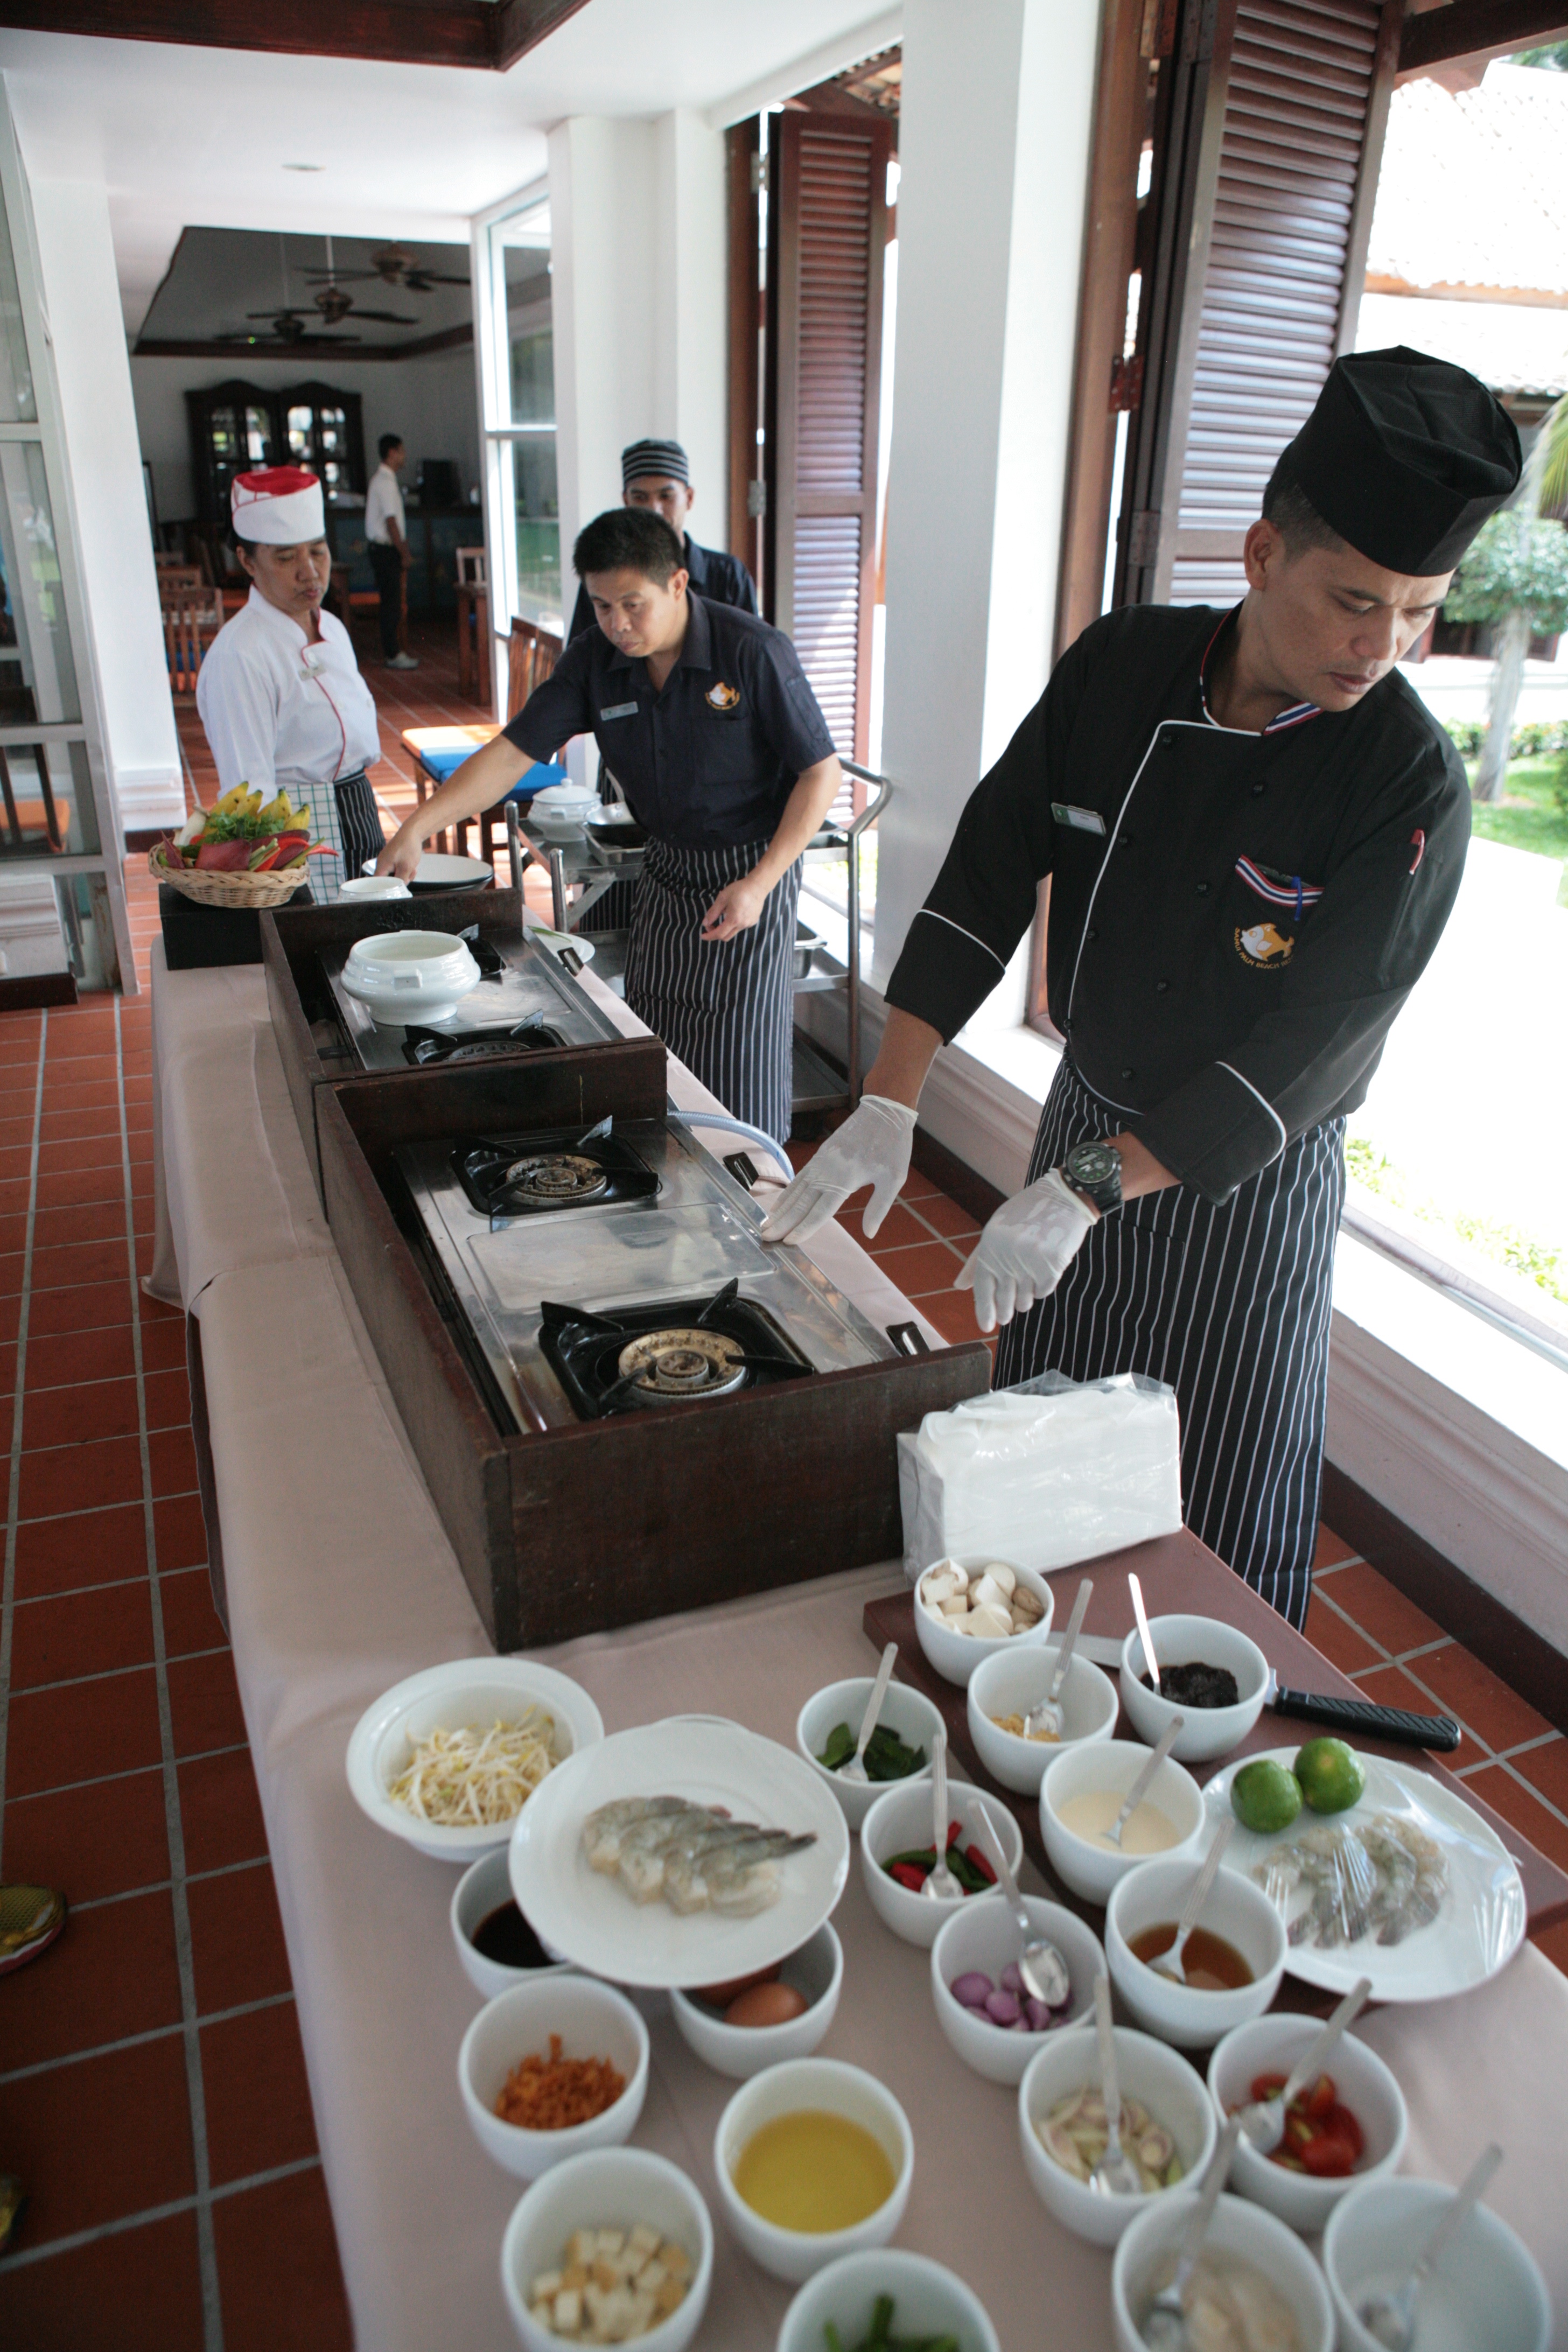 Lekcja gotowania tajskich specjałów, jaką można sobie zamówić w jednym z hoteli